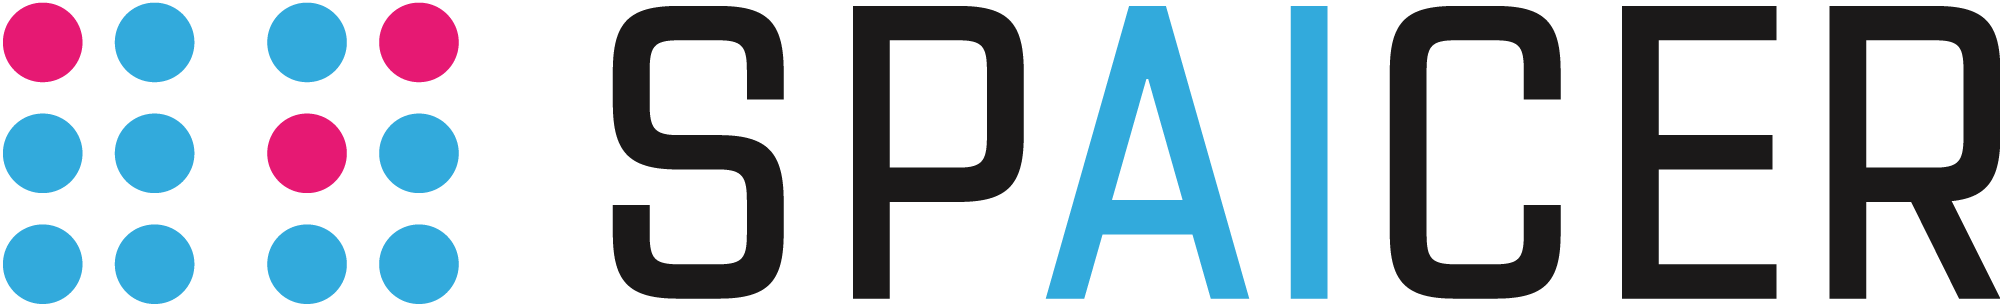 Spaicer Logo